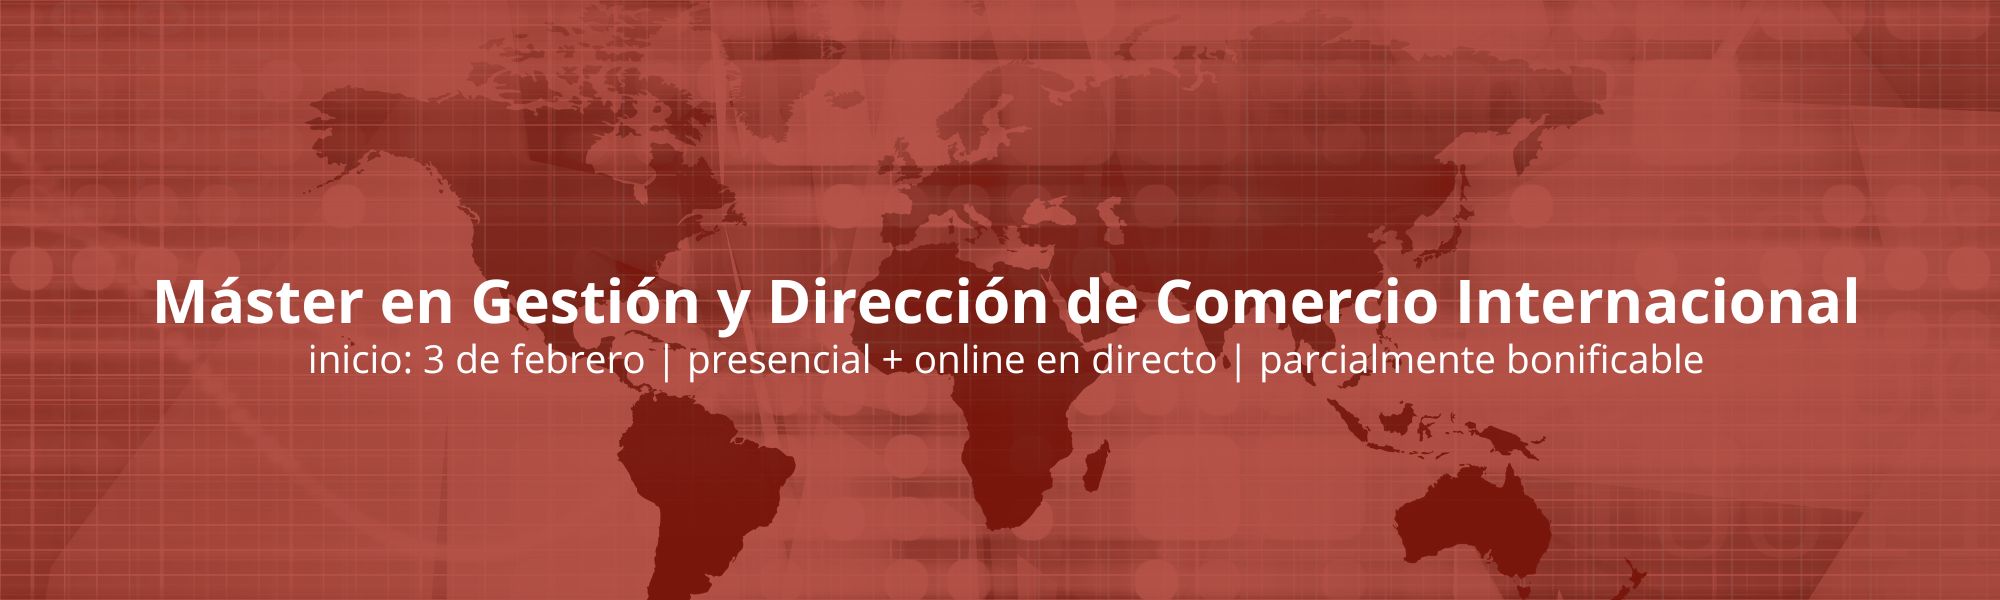 Máster en Gestión y Dirección de Comercio Internacional | Cámara de Comercio de Murcia